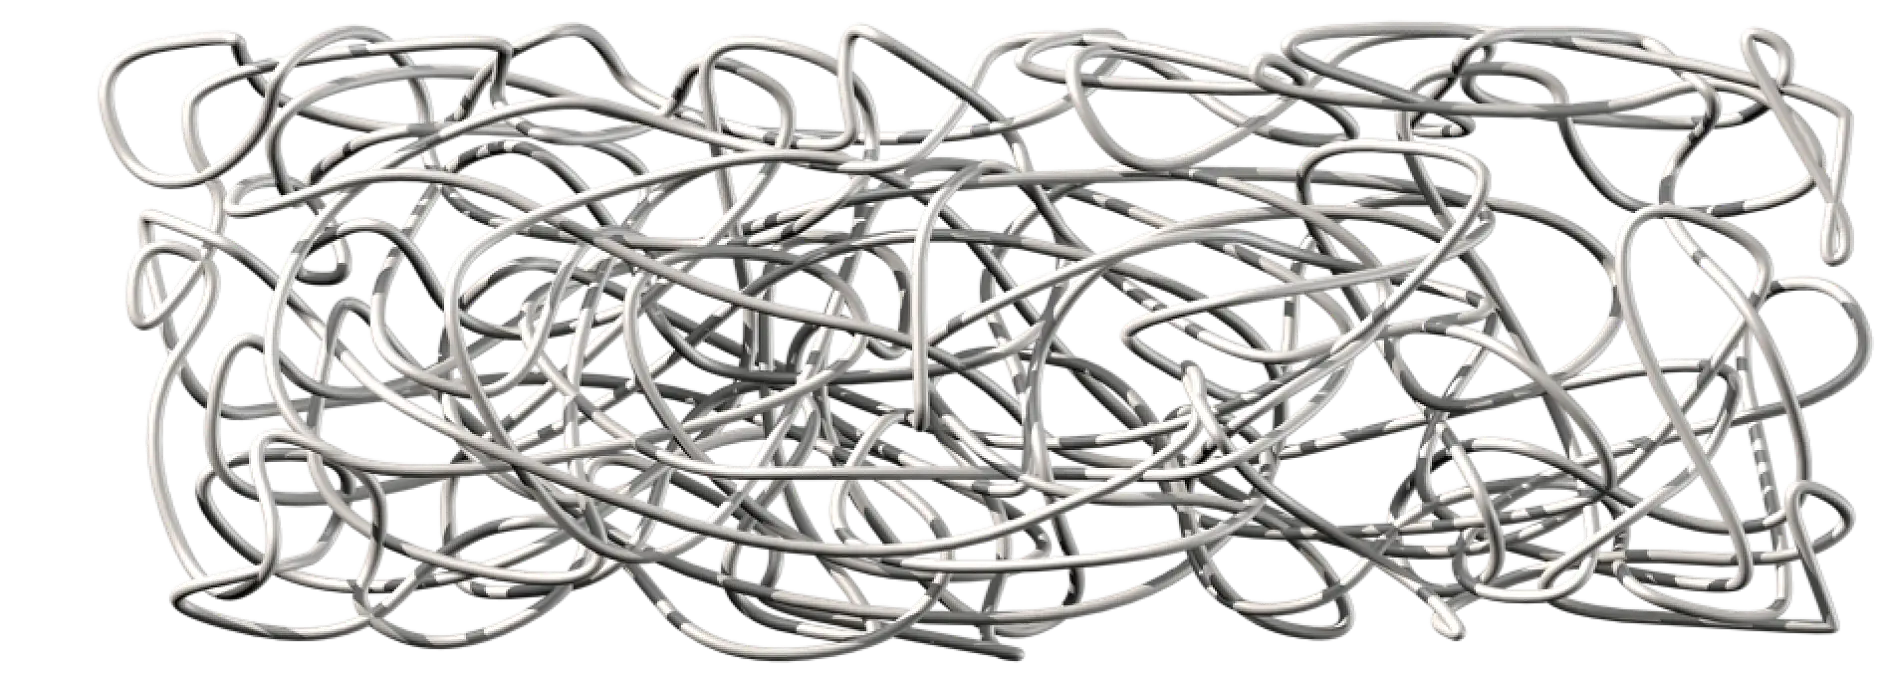 Kauczuk naturalny składa się z niezwykle długich łańcuchów polimerowych, które są poplątane, lecz nie połączone